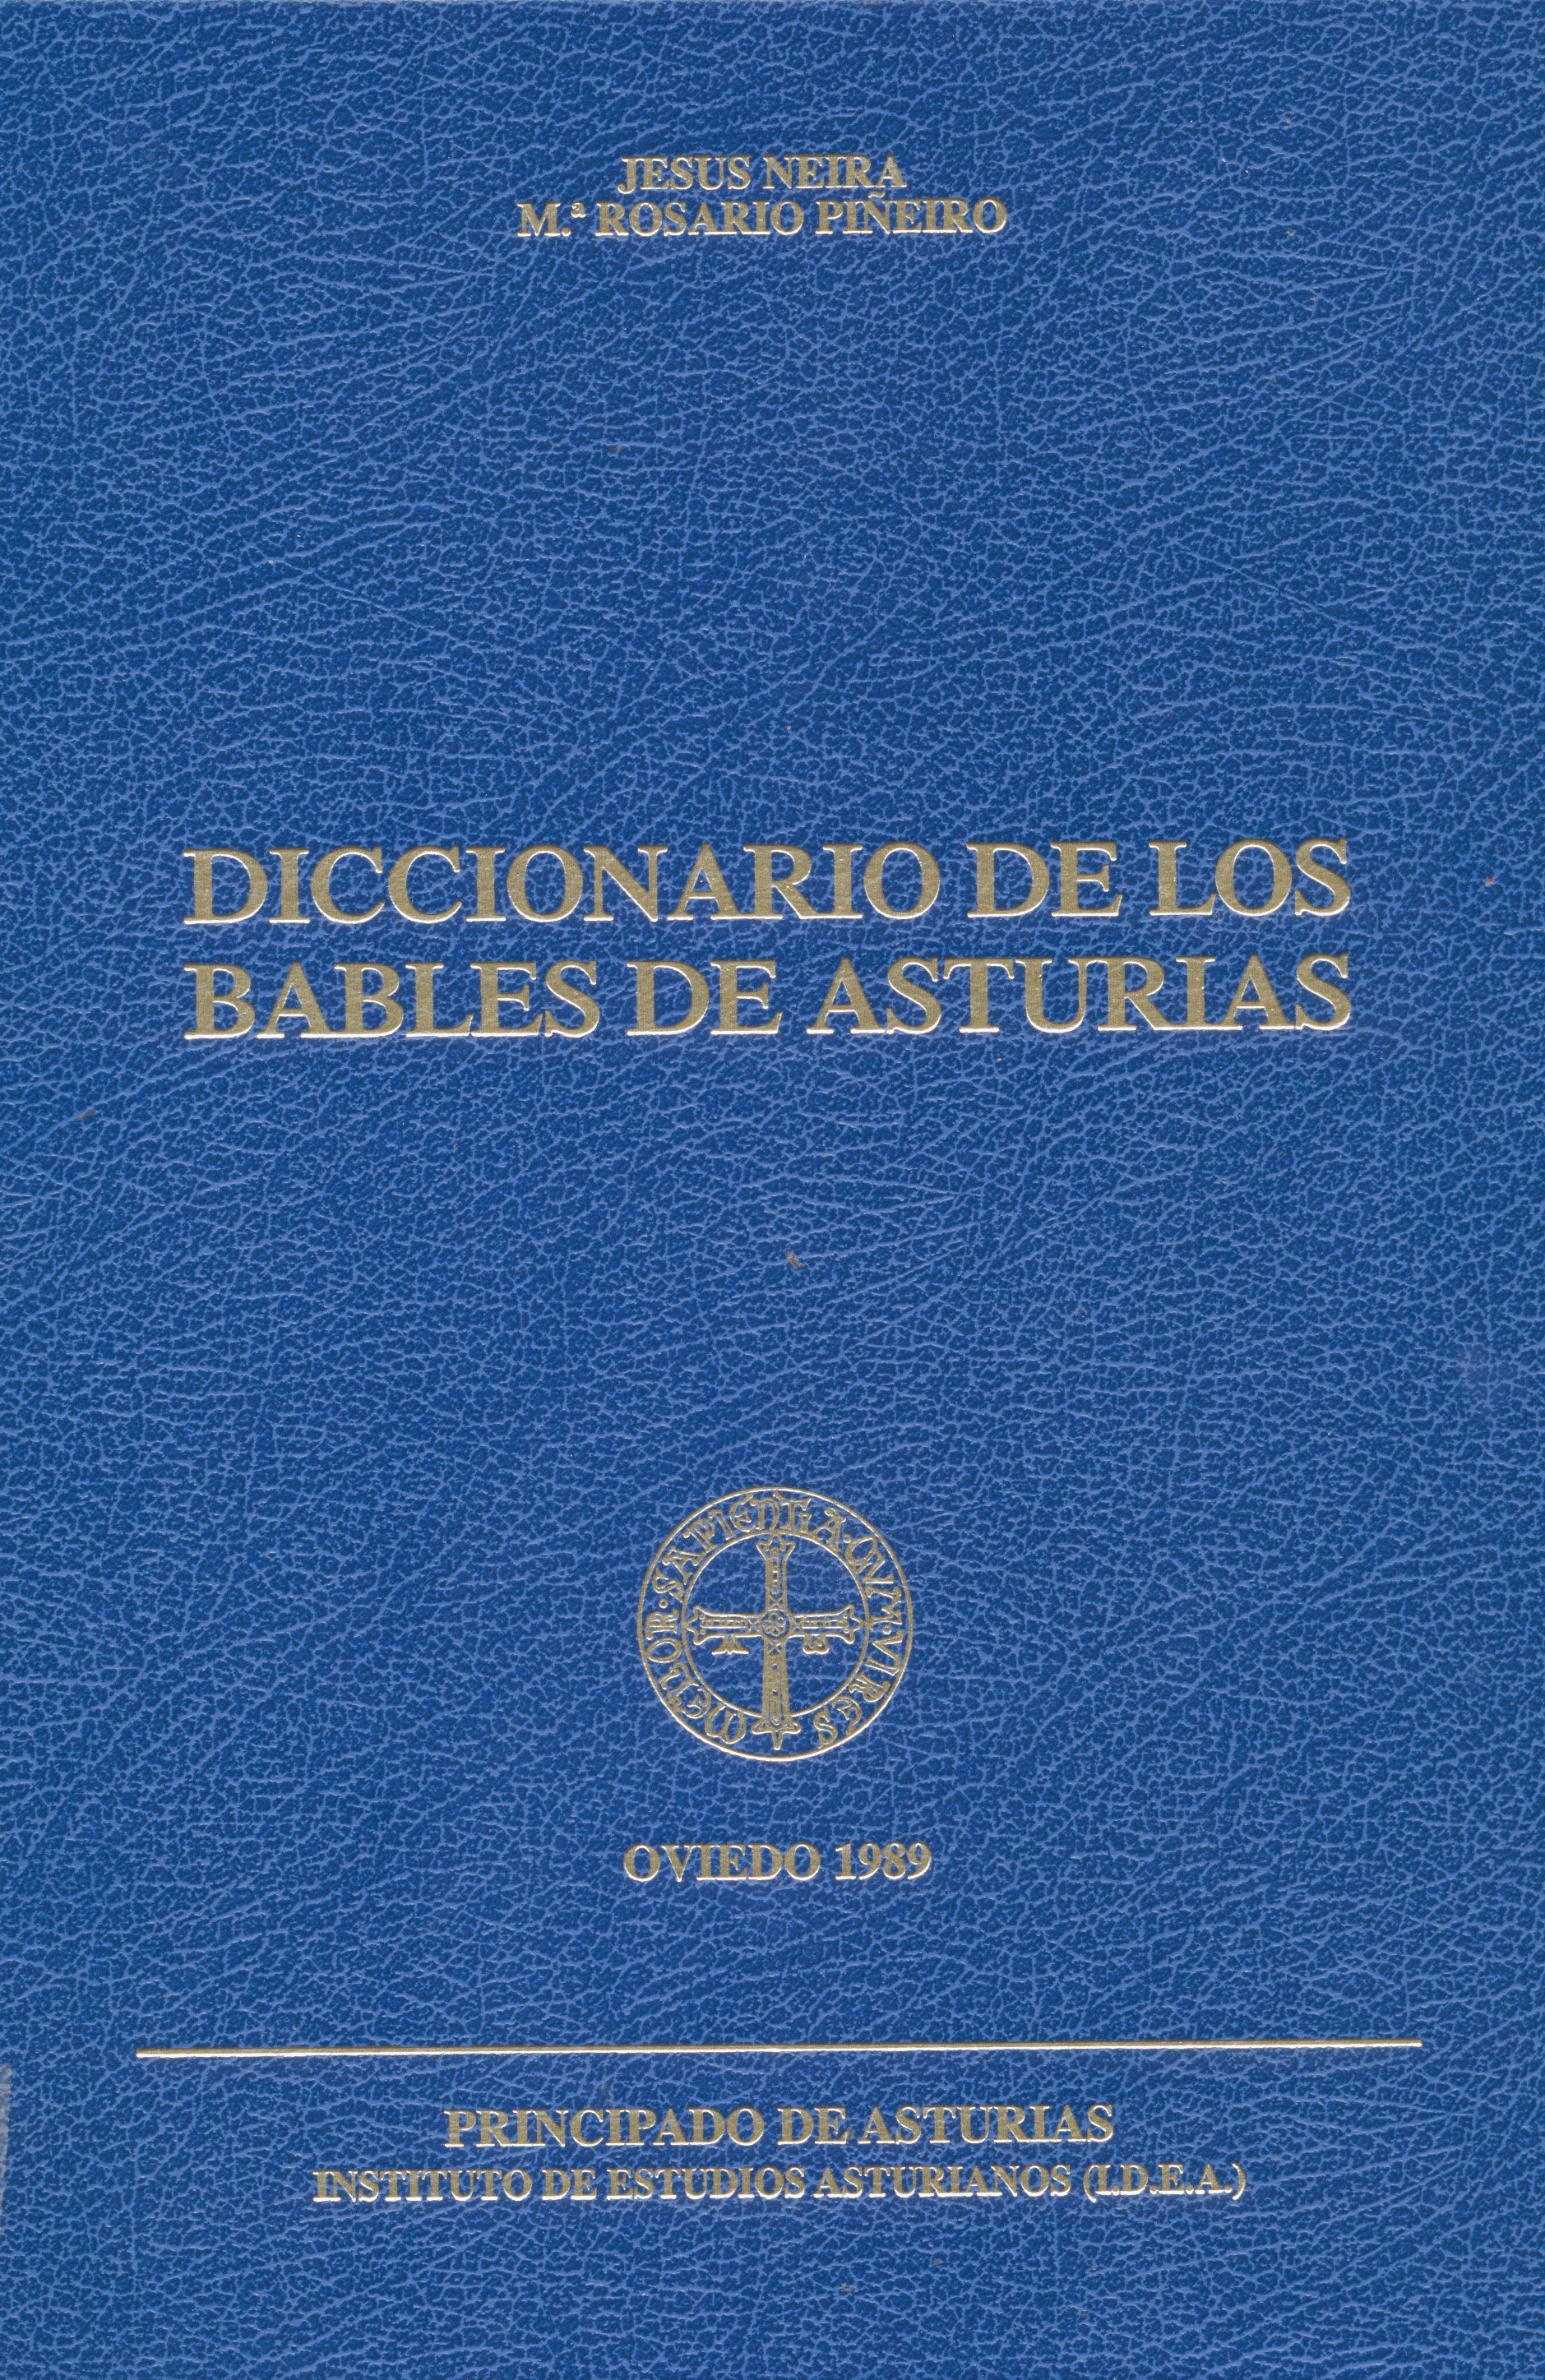 Imagen de portada del libro Diccionario de los bables de Asturias